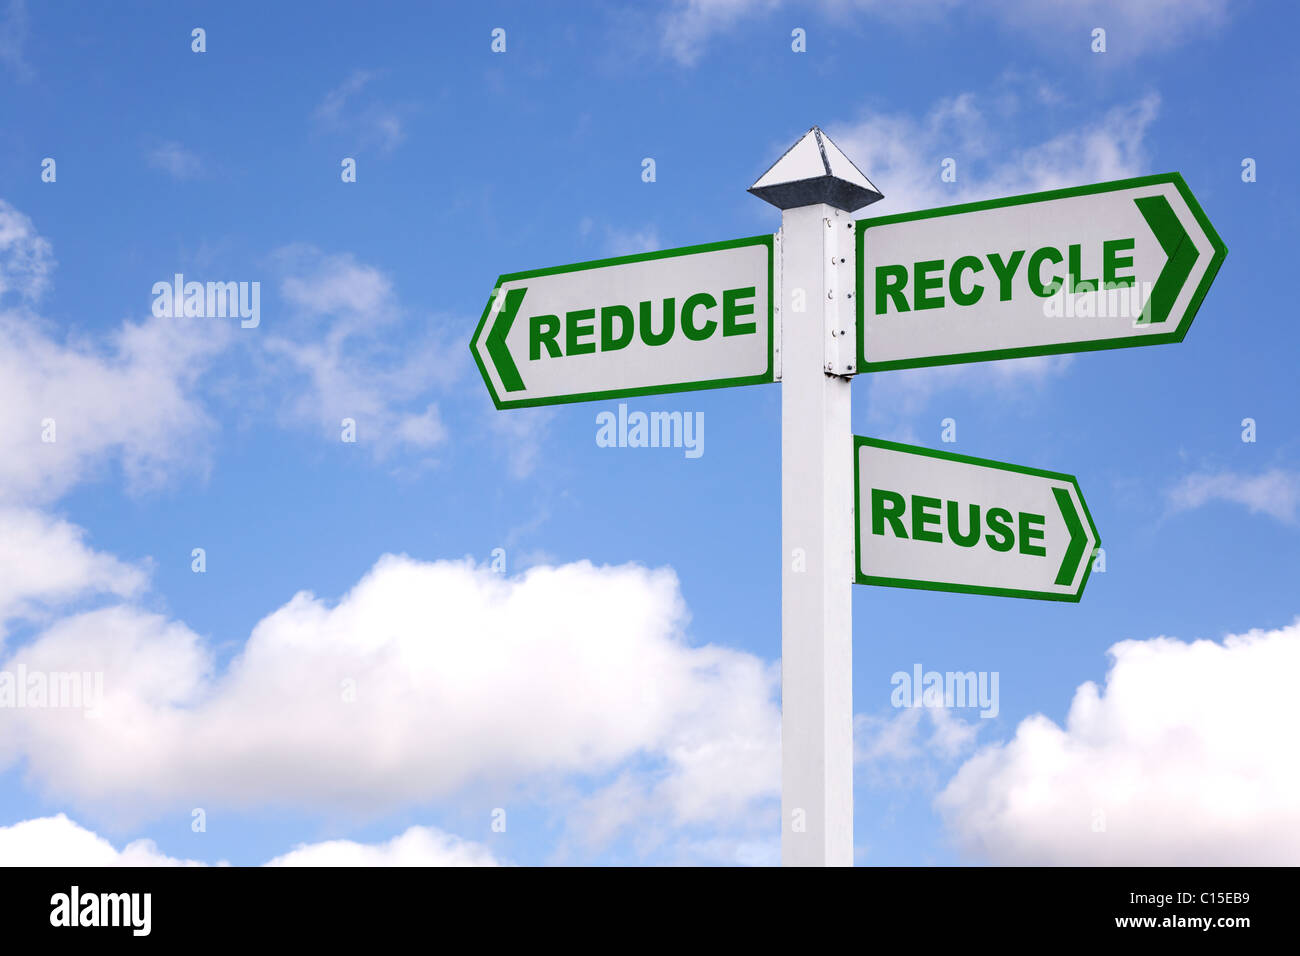 Image concept de recyclage d'un panneau avec la Rs 3 en vert sur les flèches, réduire, recycler, réutiliser. Banque D'Images